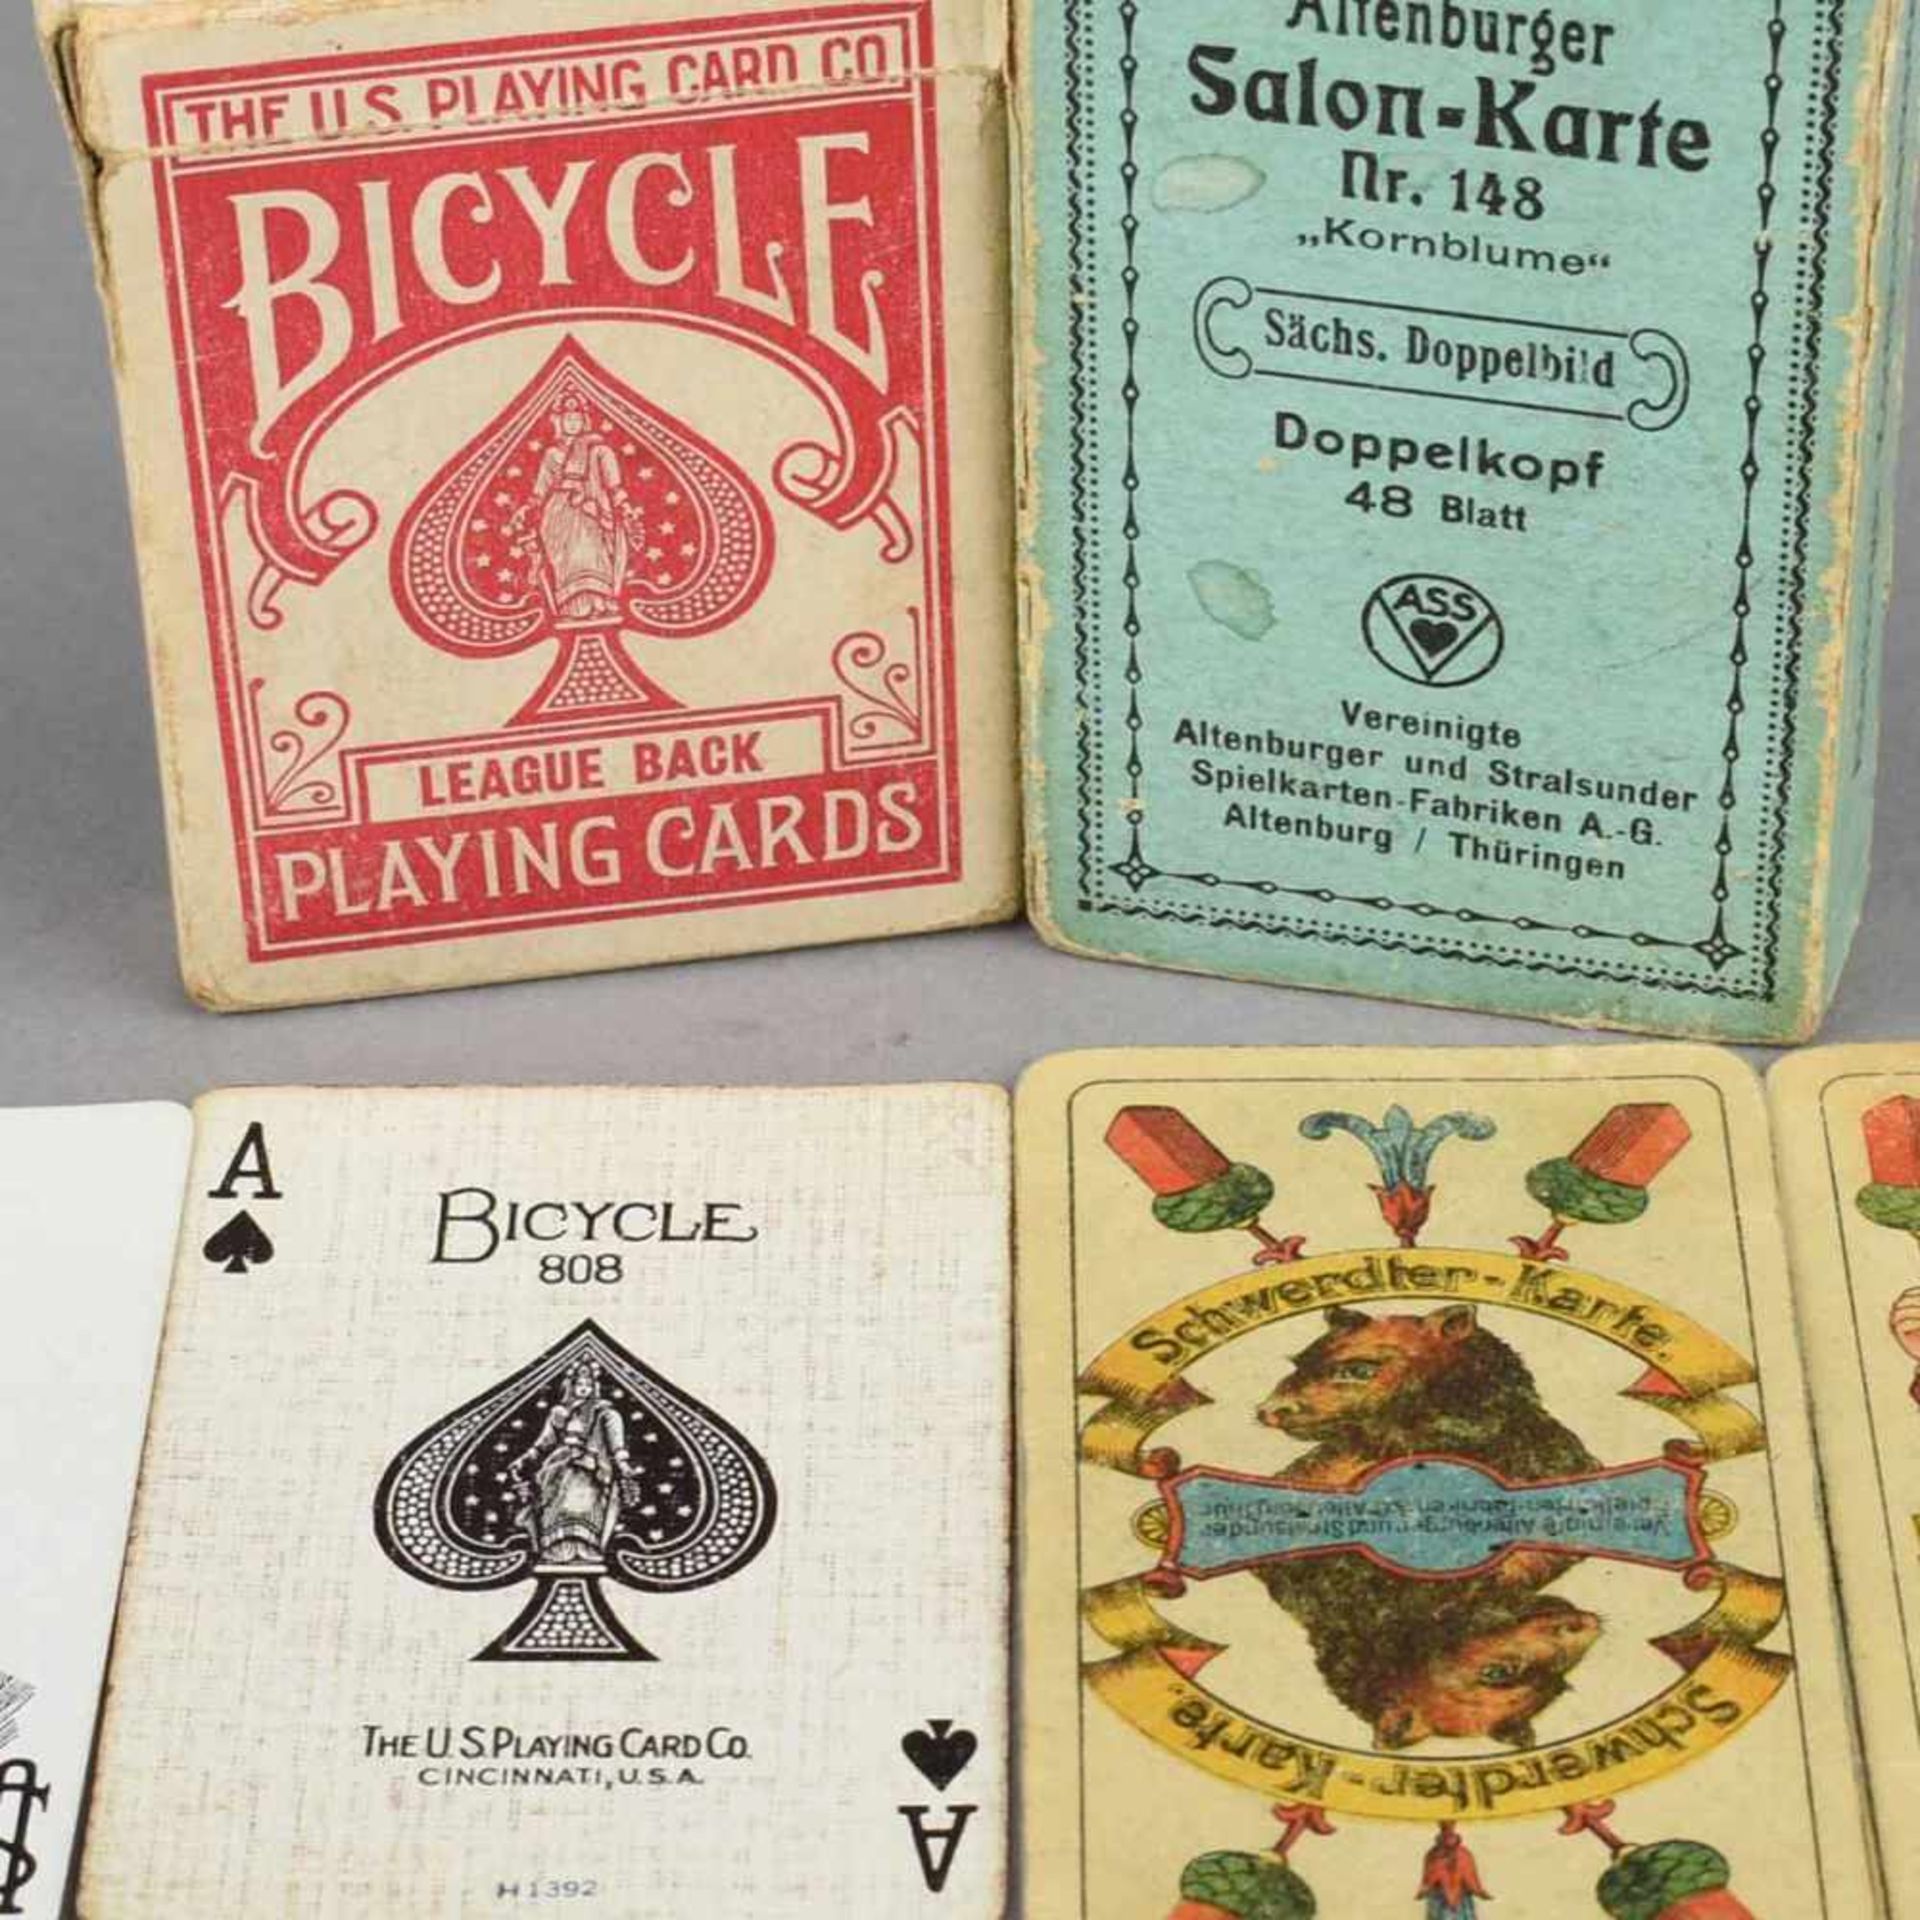 Paar Kartenspiele Altenburger Salon-Karte Nr. 148 sowie "US Playing Card Co. Bicycle", nicht auf